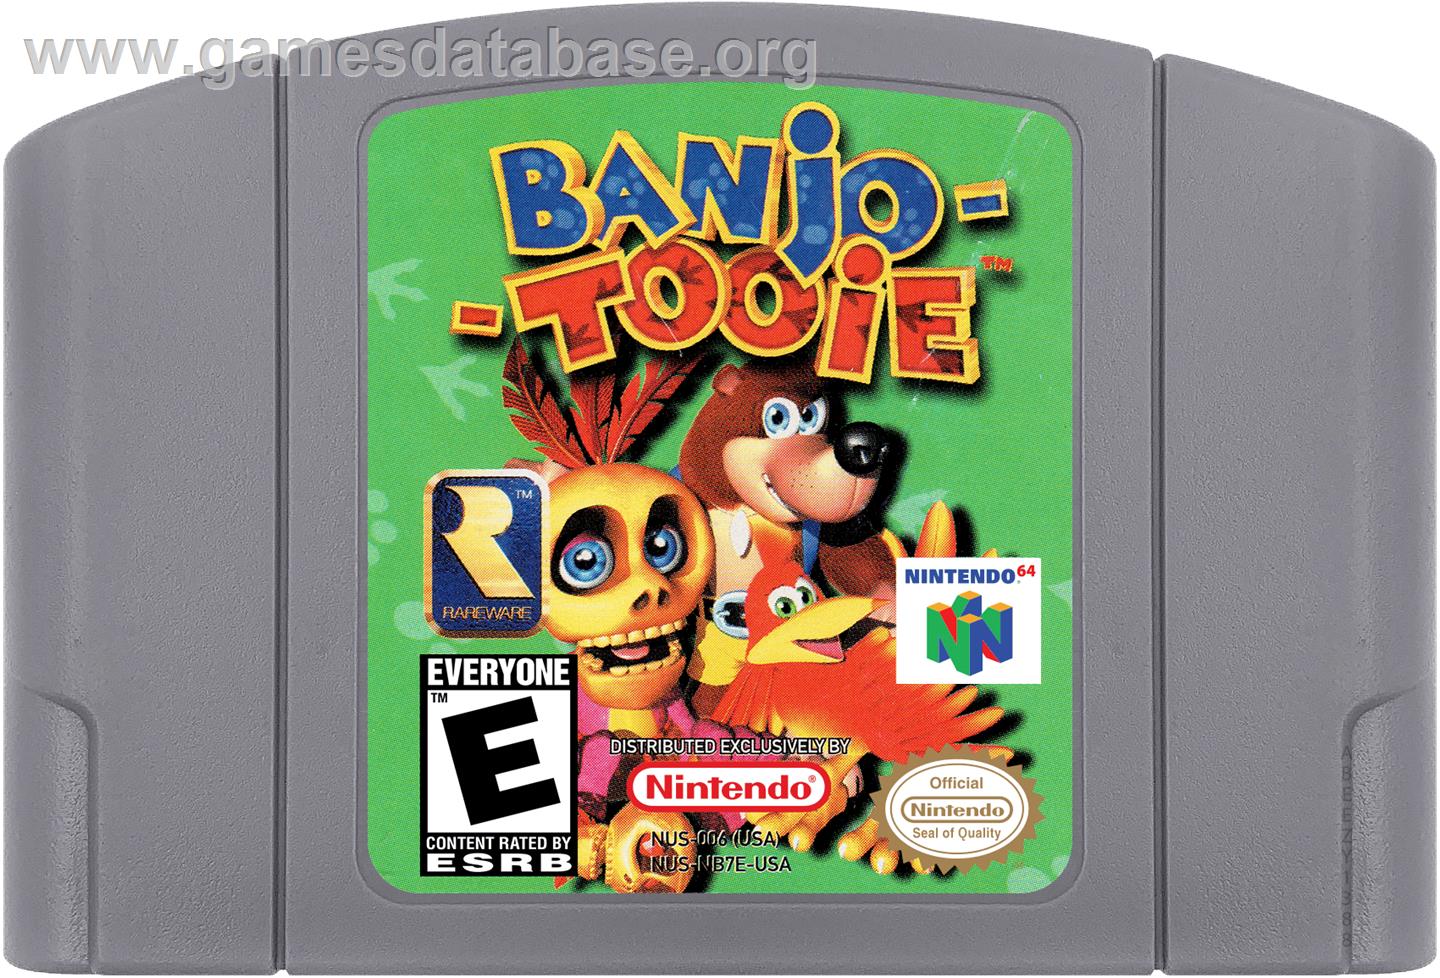 Banjo-Tooie - Nintendo N64 - Artwork - Cartridge